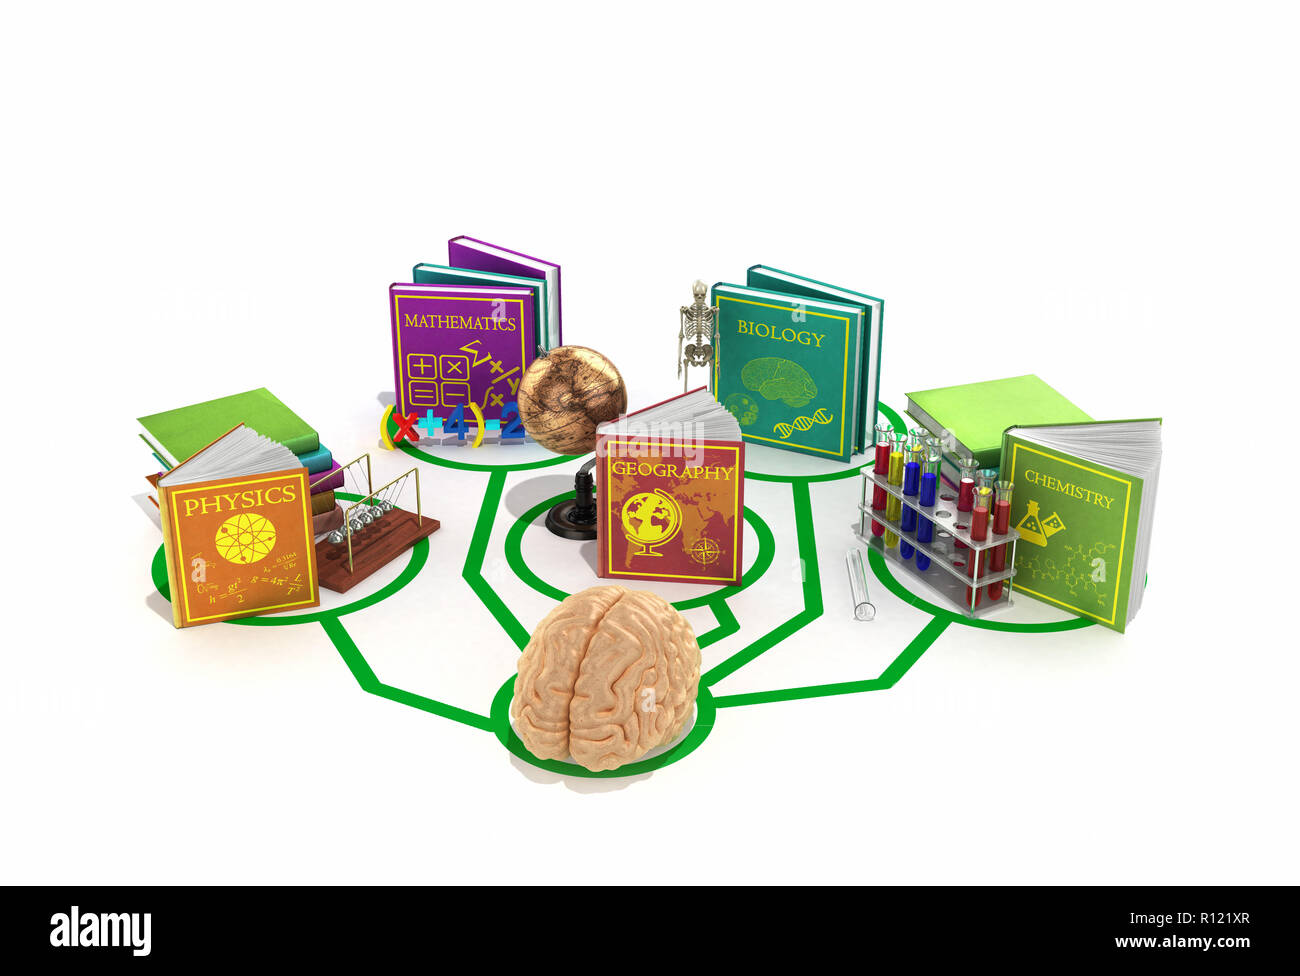 Concept de l'éducation, le cerveau est connecté aux lignes de livres consacrés à diverses sciences 3D render sur un fond blanc Banque D'Images